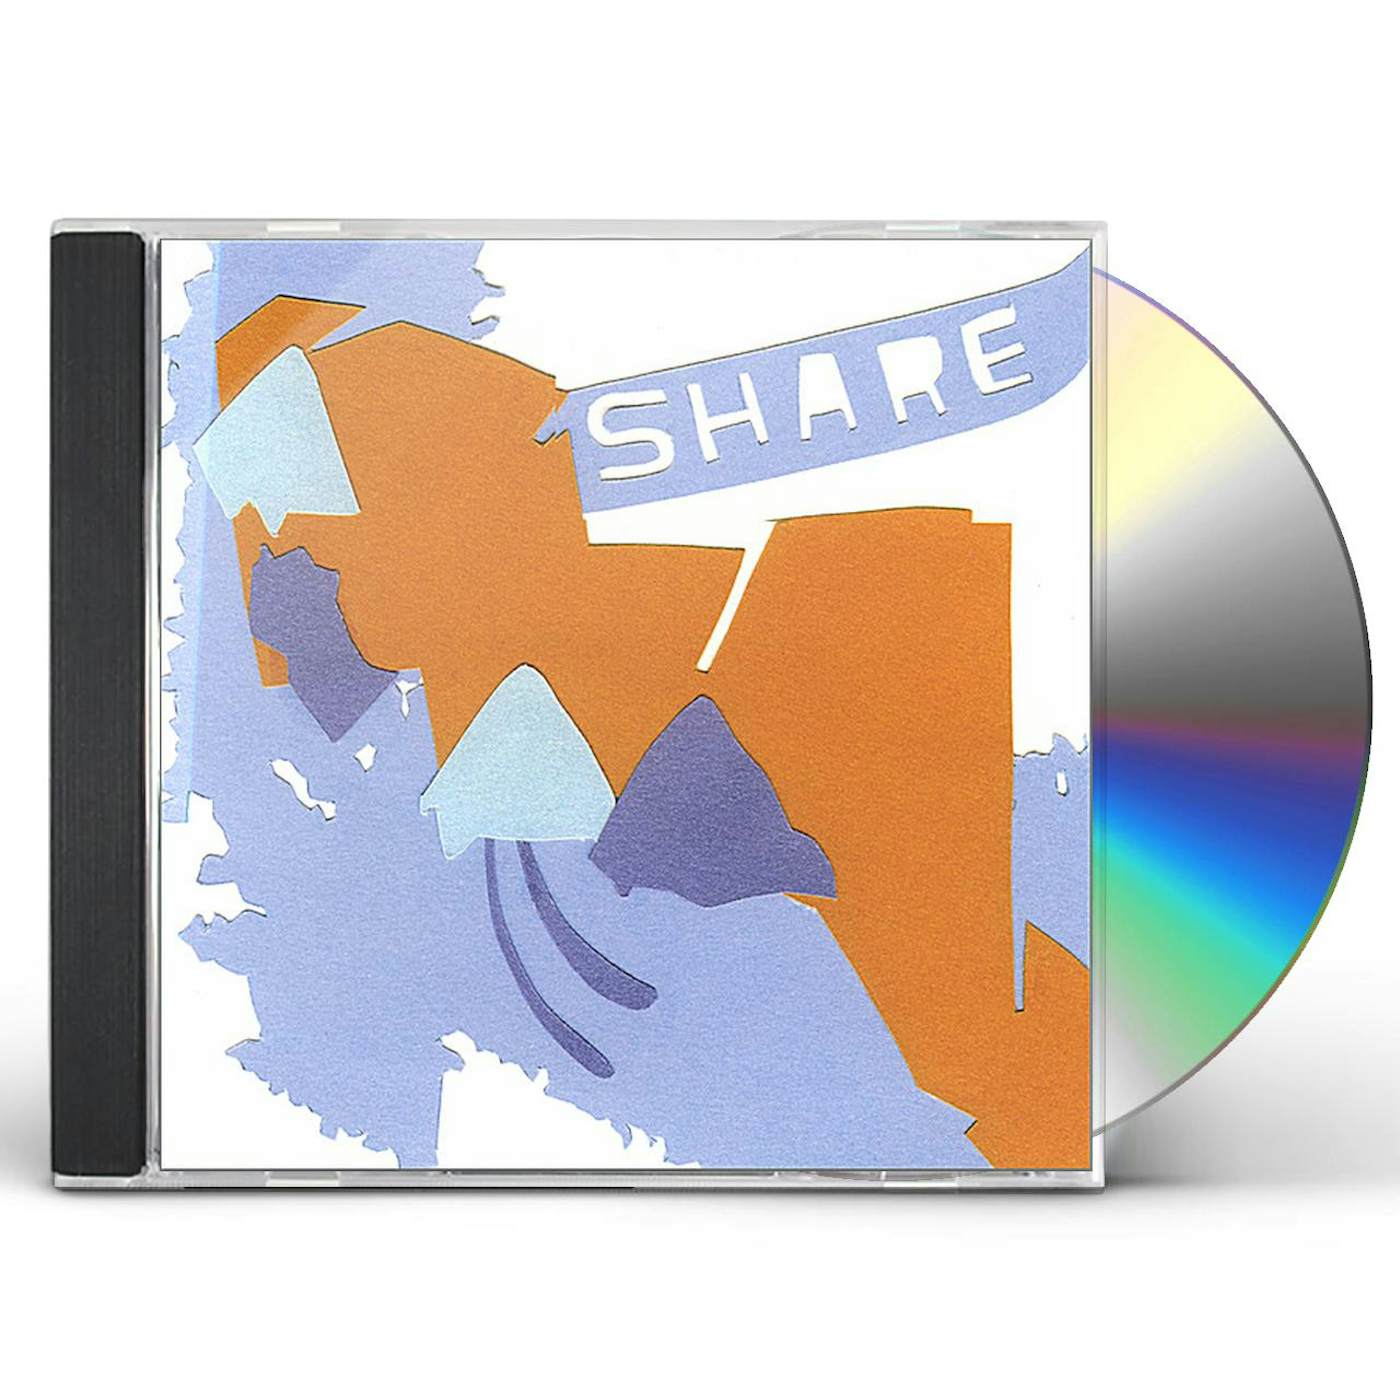 Share! PEDESTRIAN CD